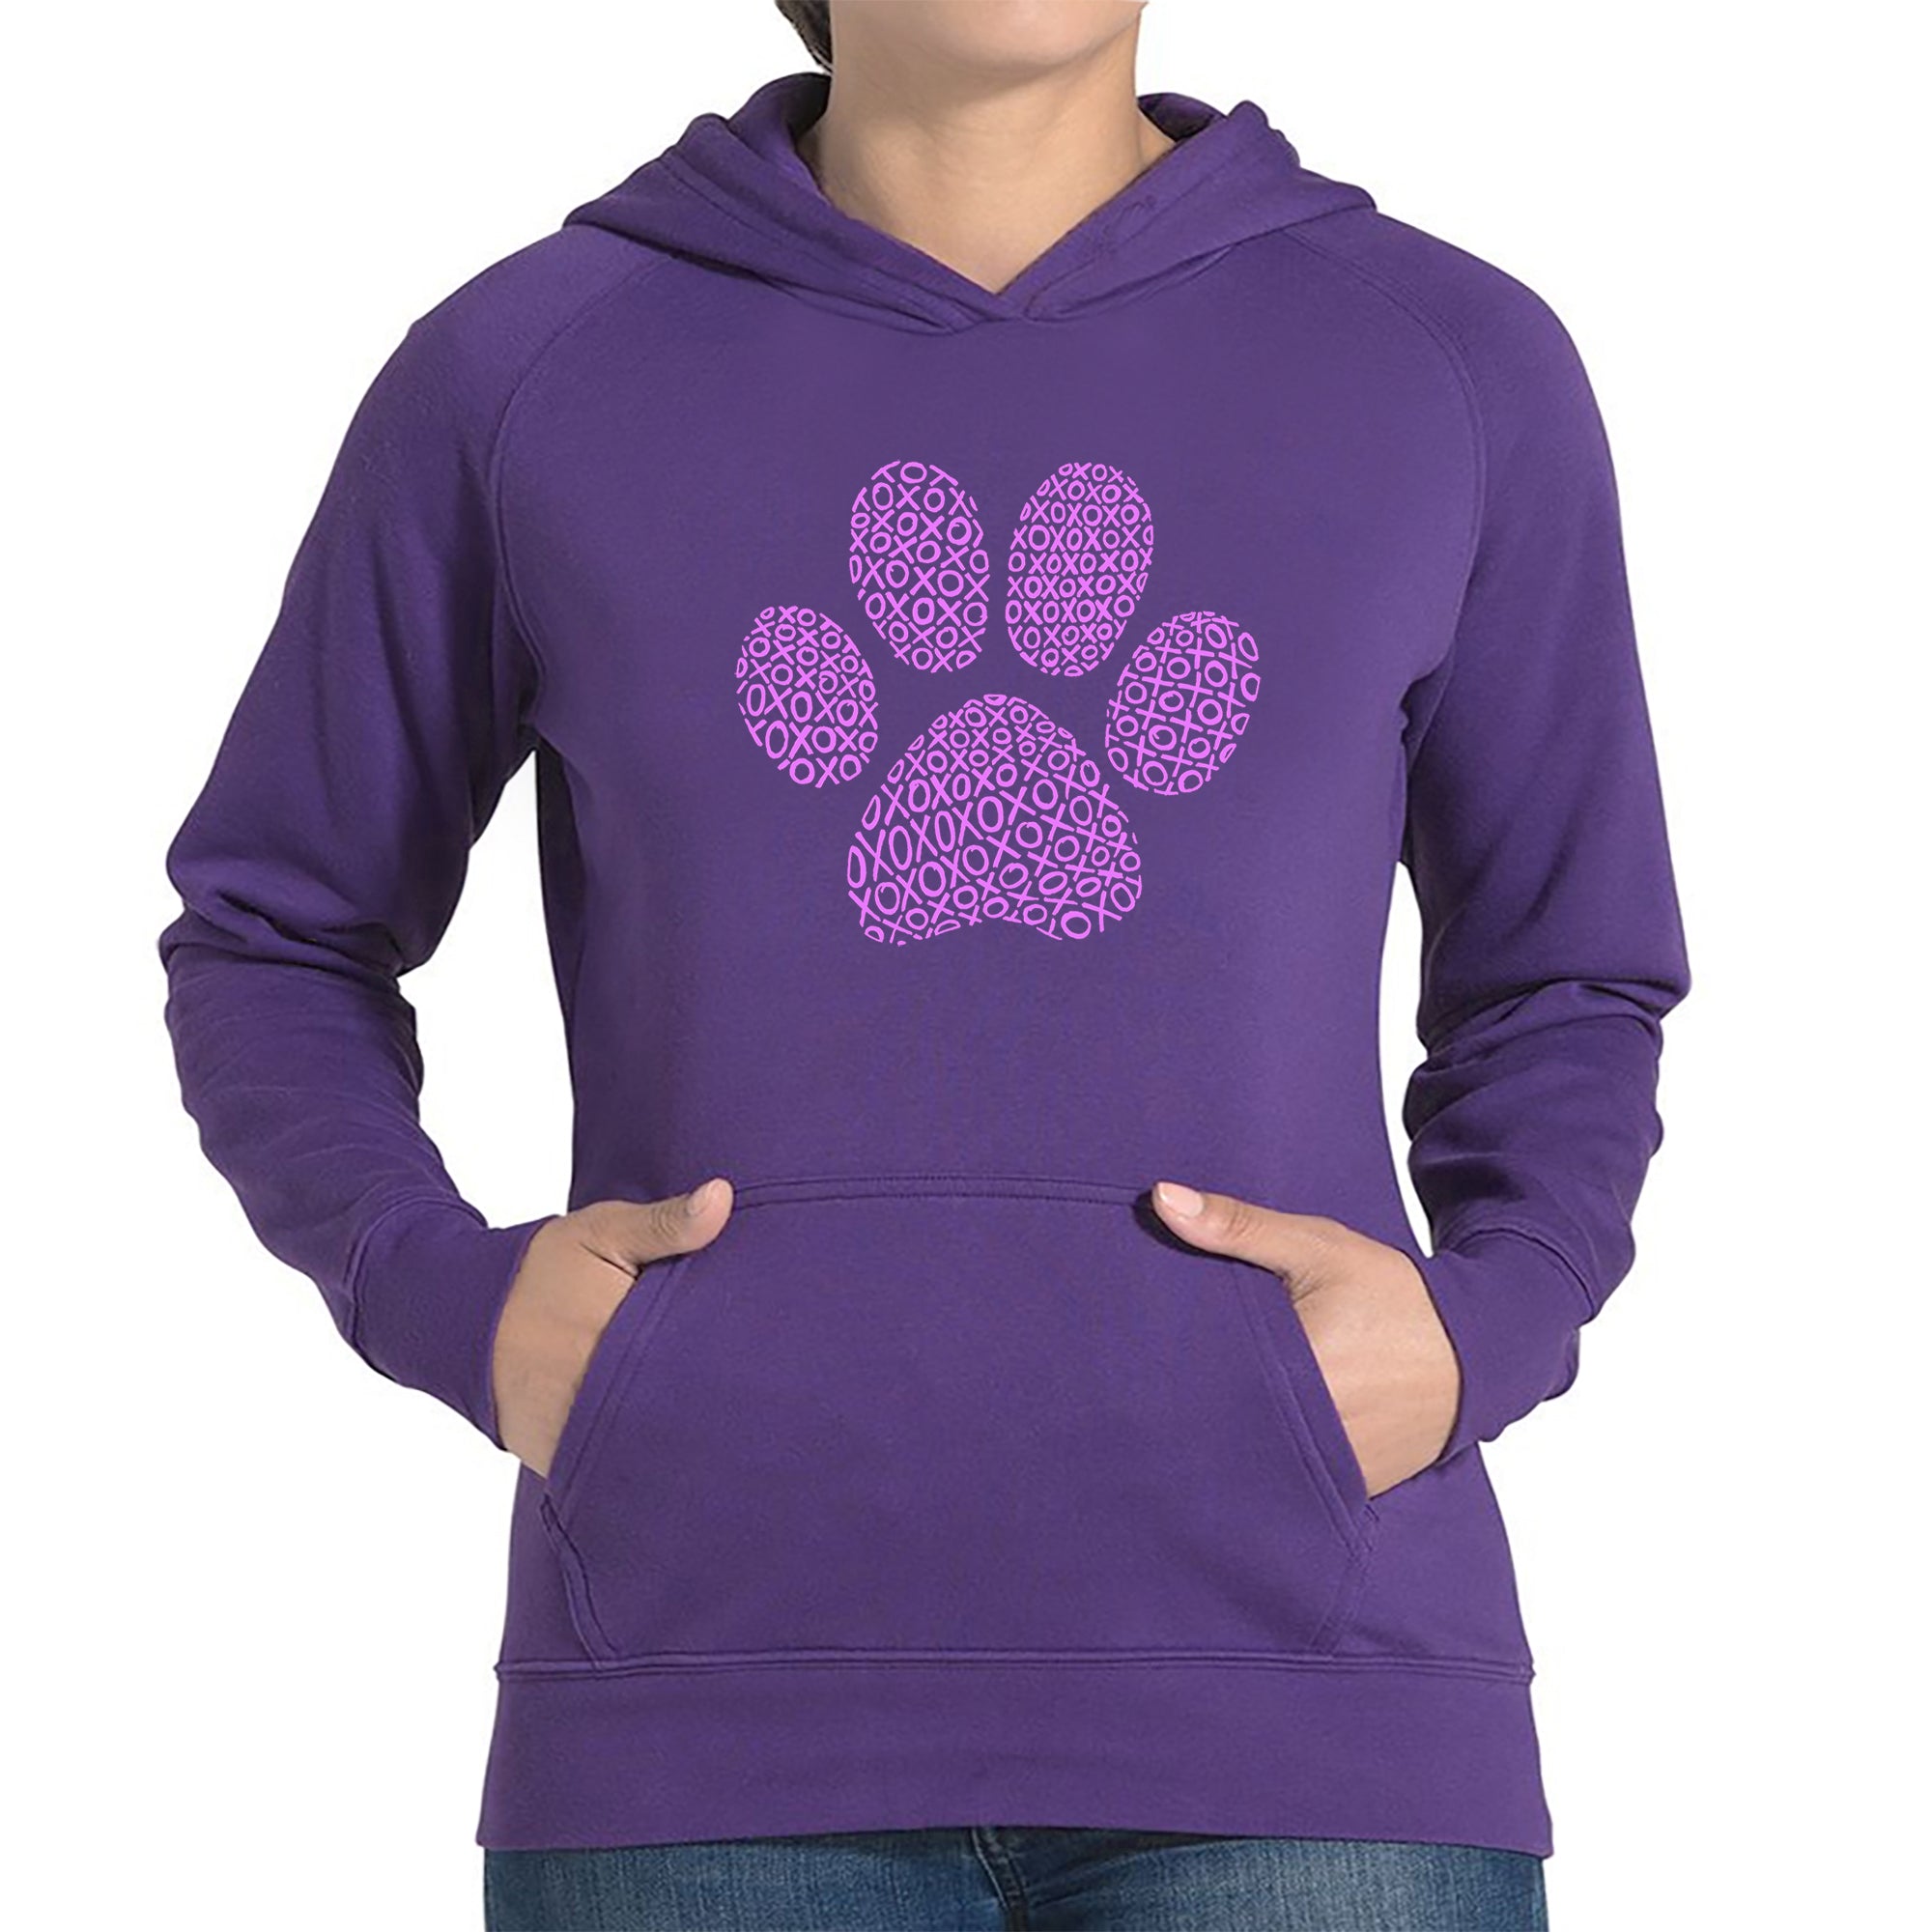 XOXO Dog Paw - Women's Word Art Hooded Sweatshirt - Purple - XX-Large